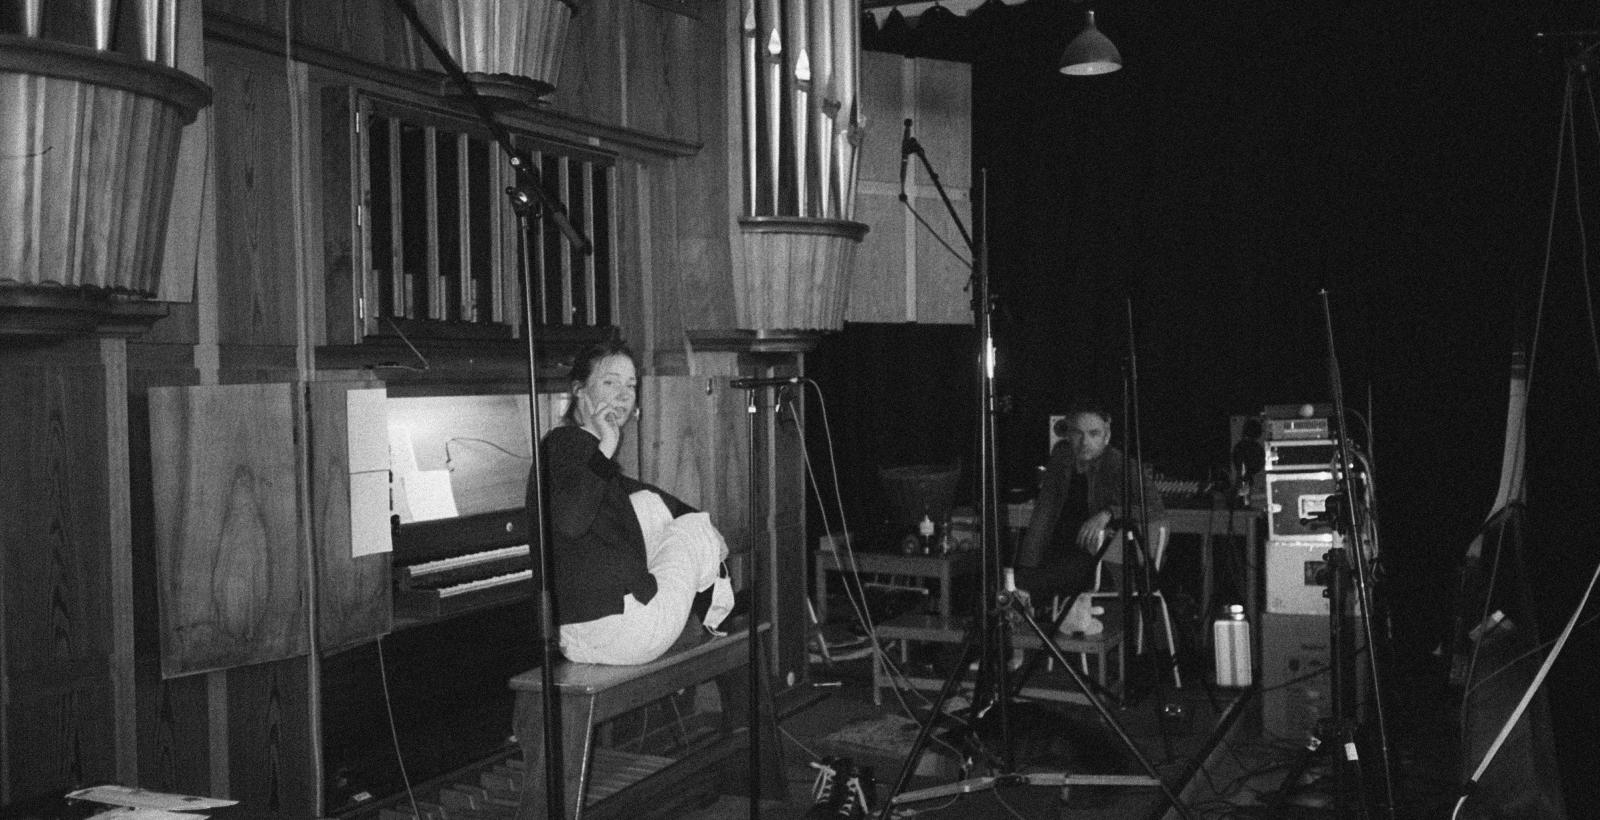 Louise Vind Nielsen an der Orgel in schwarz weiß fotografiert